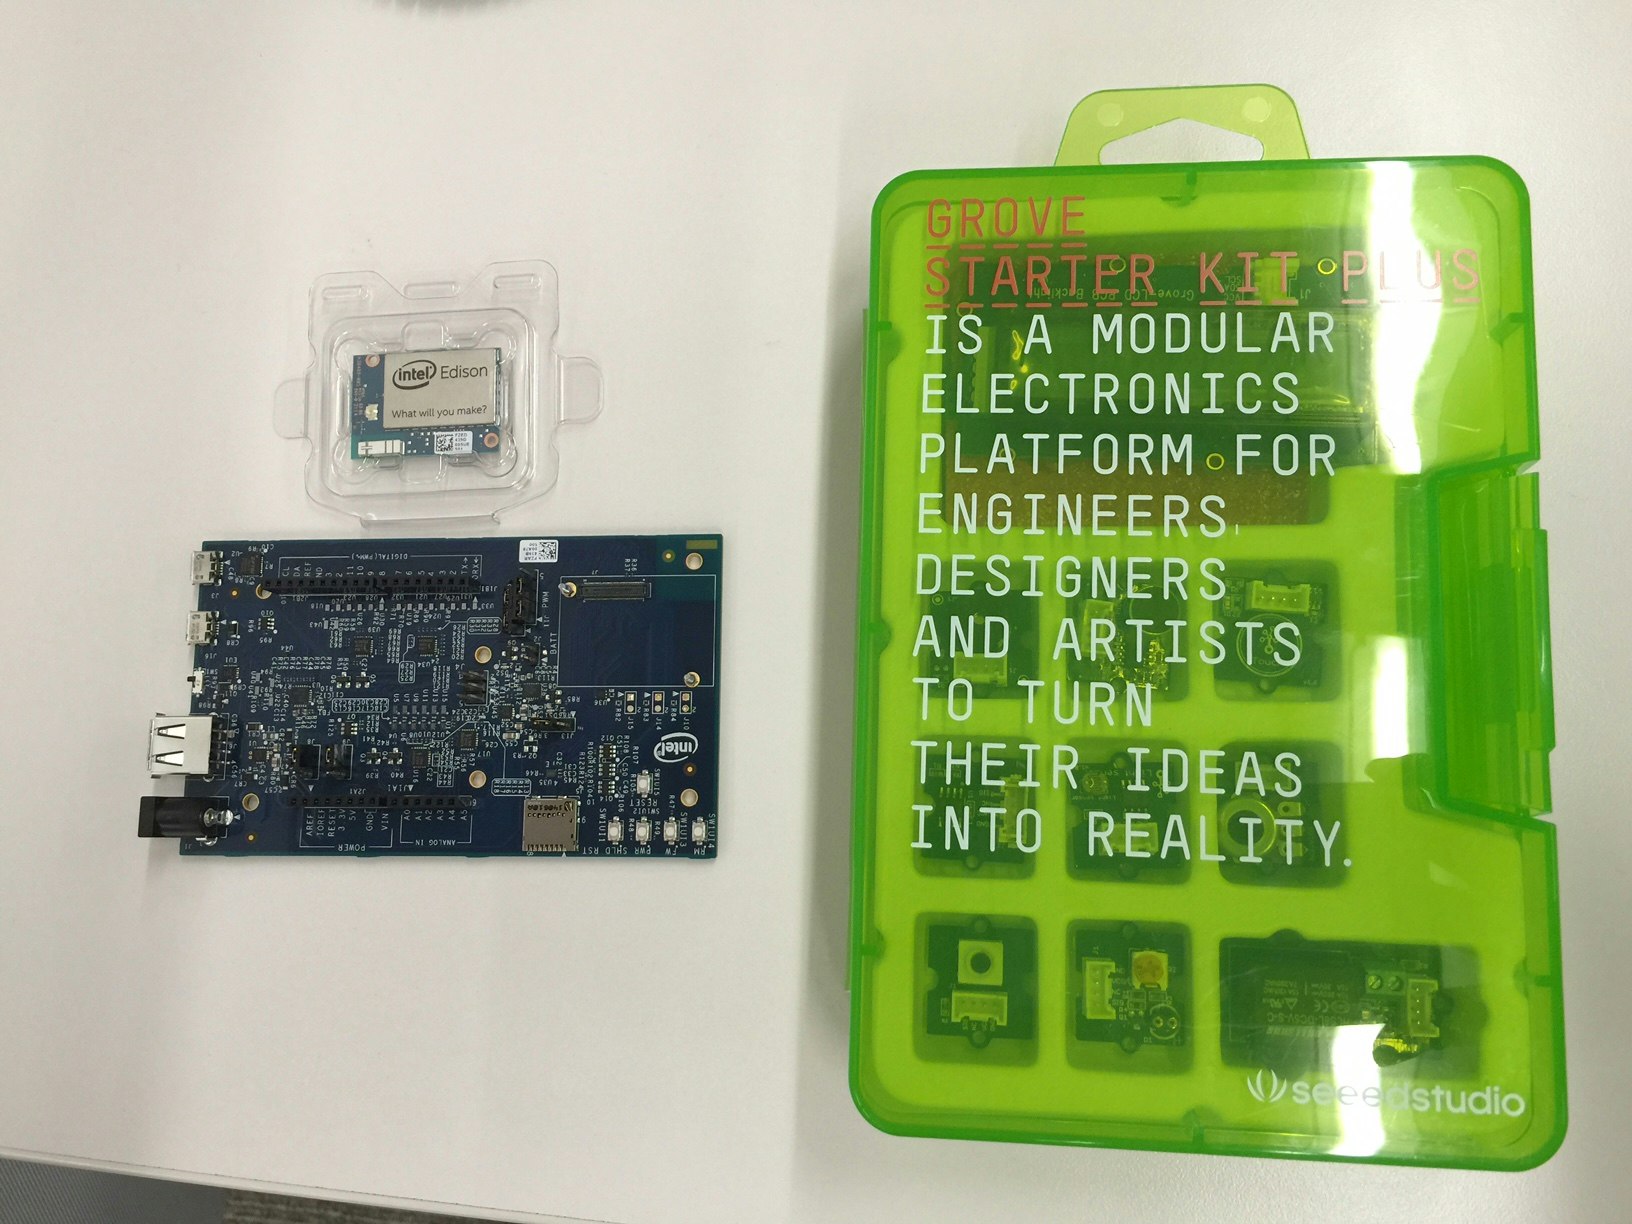 左上がEdison、左下がEdison Kit for Arduino、右側がGROVEキット